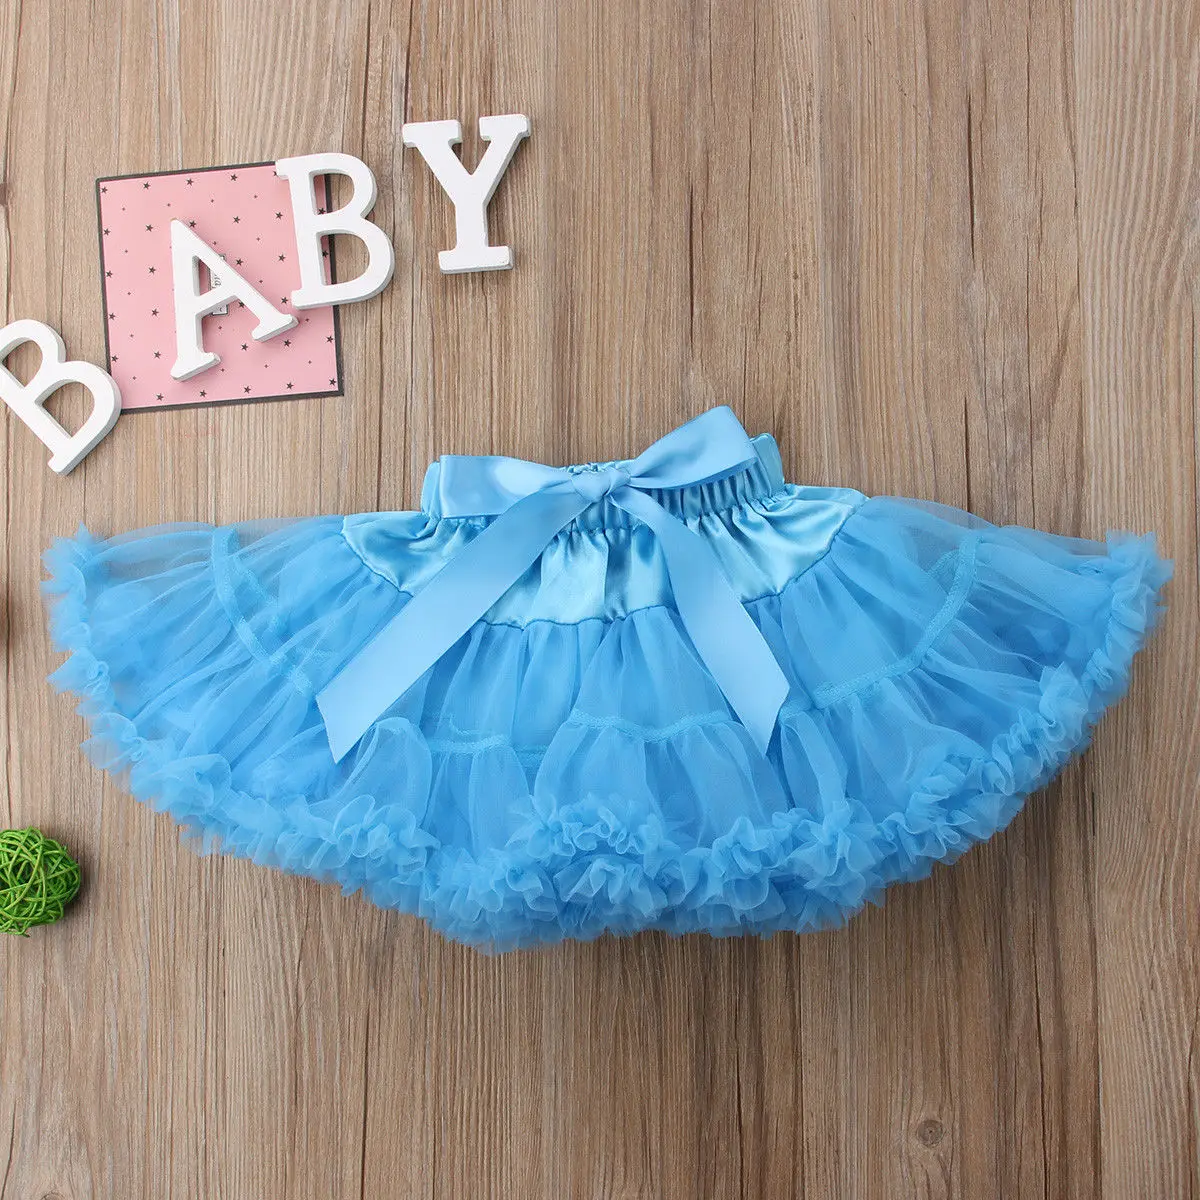 Newborn Infant Girls Kids Fluffy Tutu Skirt Princess Party Lovely Petticoat Ballet Petti skirt